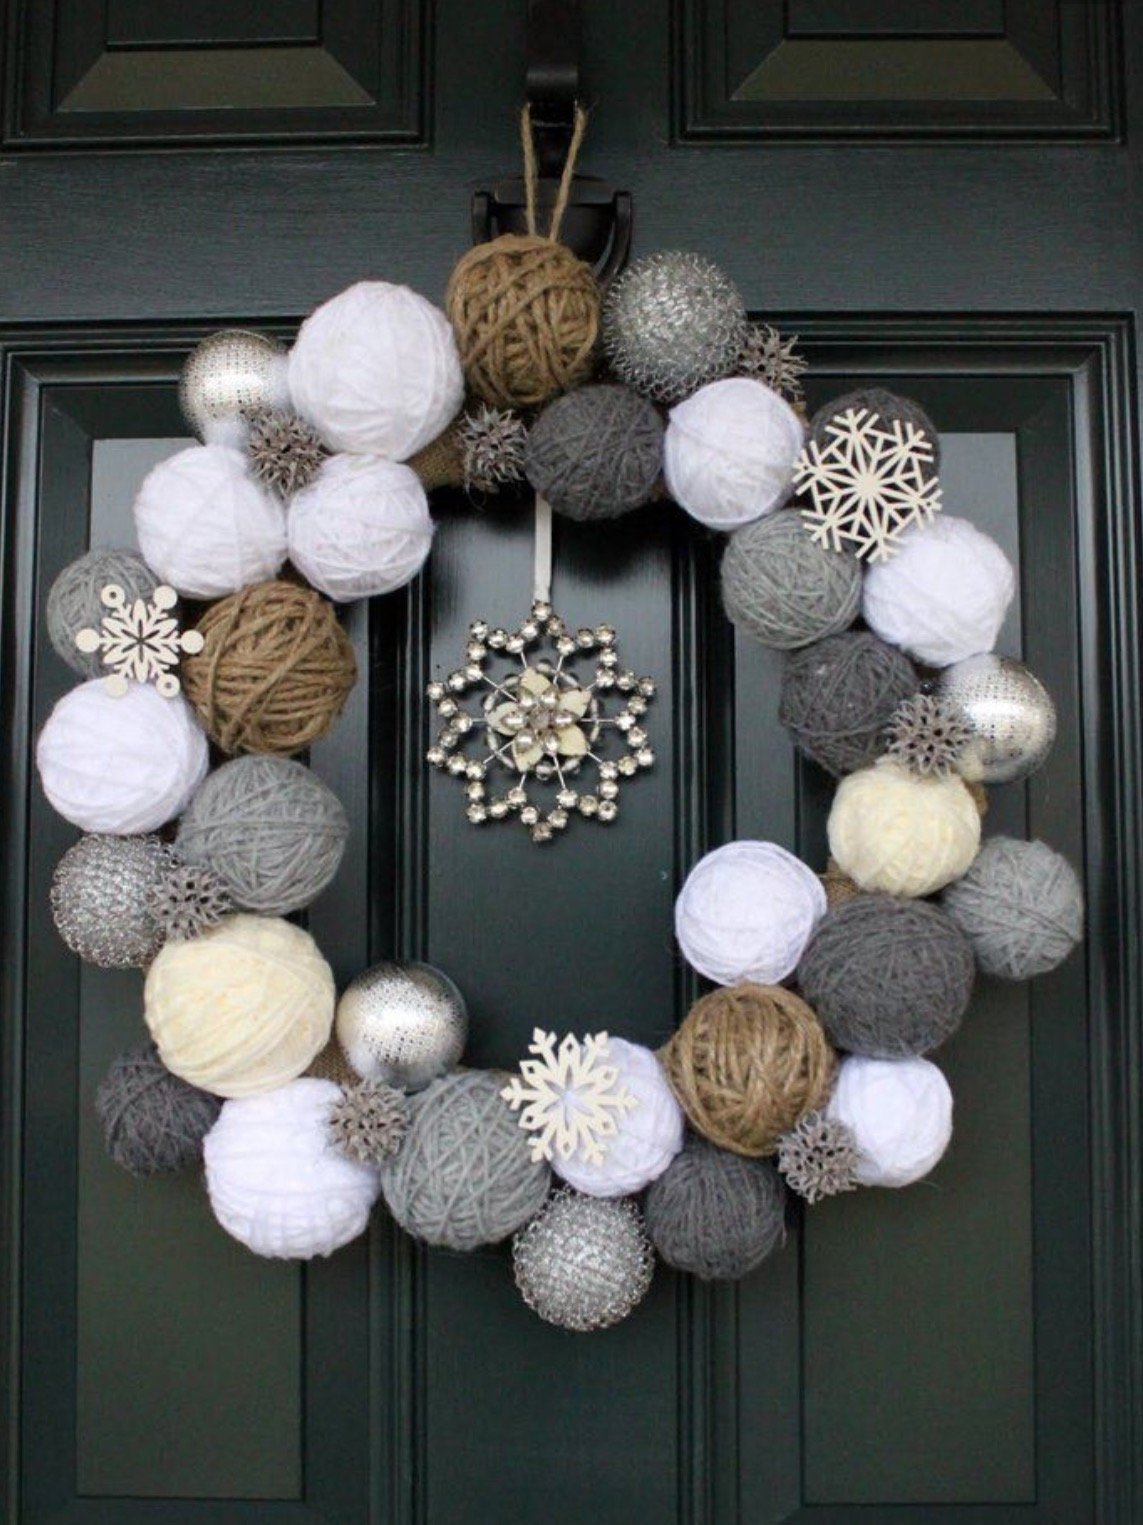 Limo Cambiable lanzadera 15 Ideas para decorar la puerta de tu casa esta Navidad